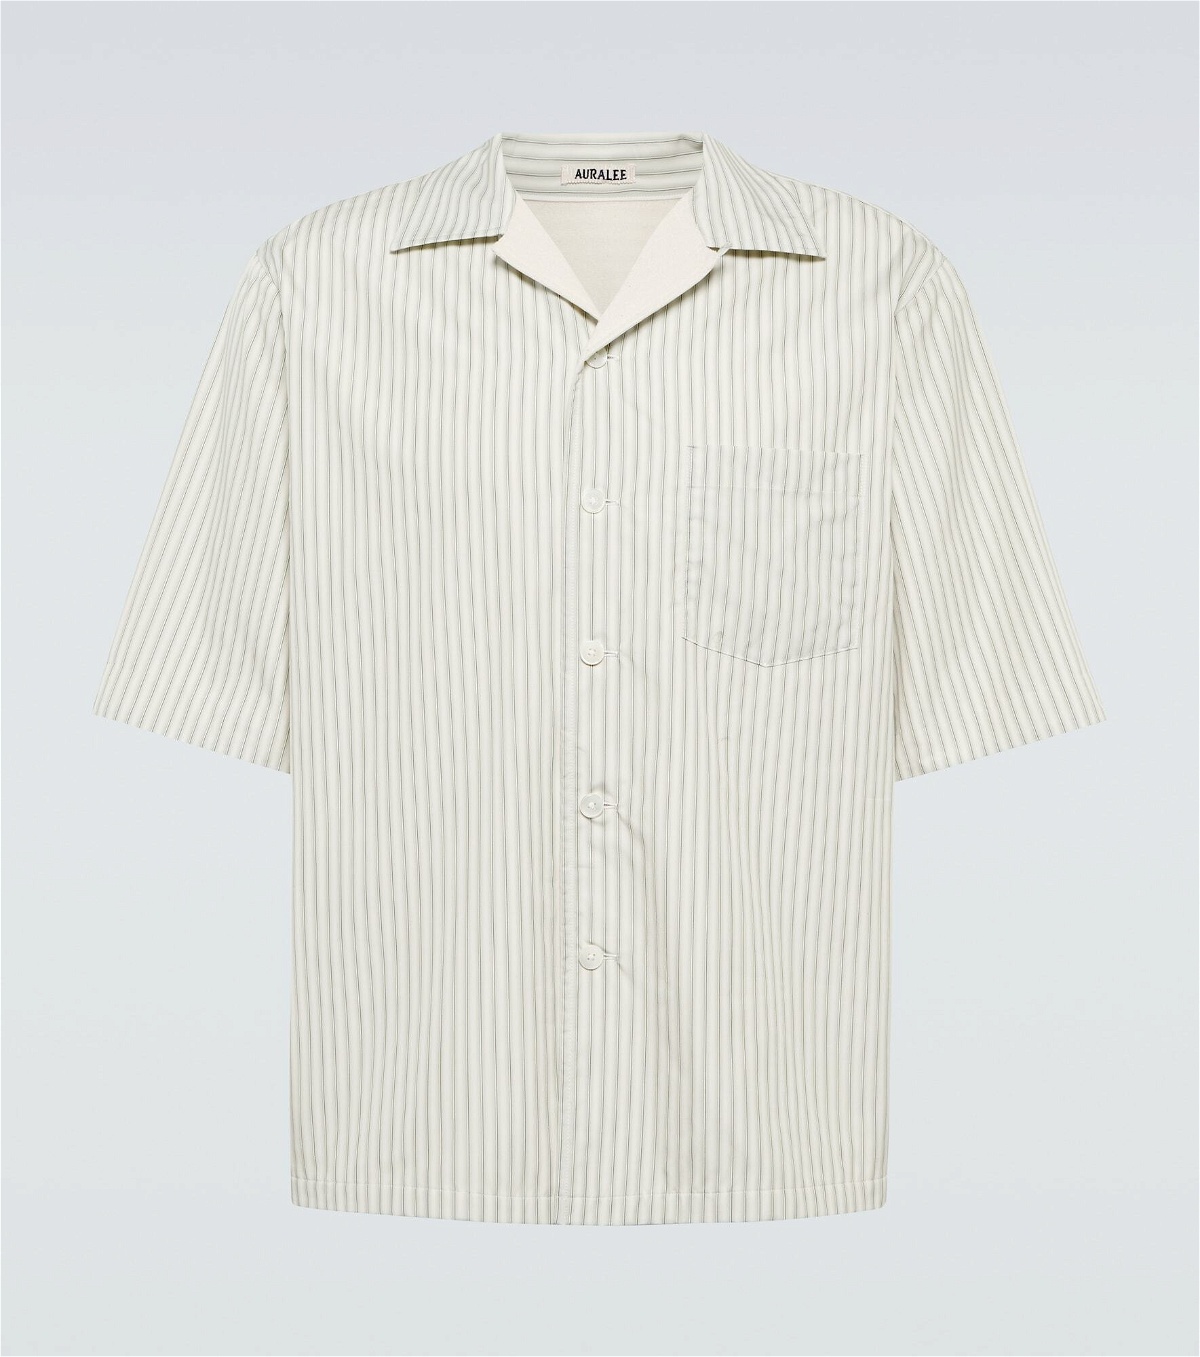 Auralee - Striped cotton shirt Auralee